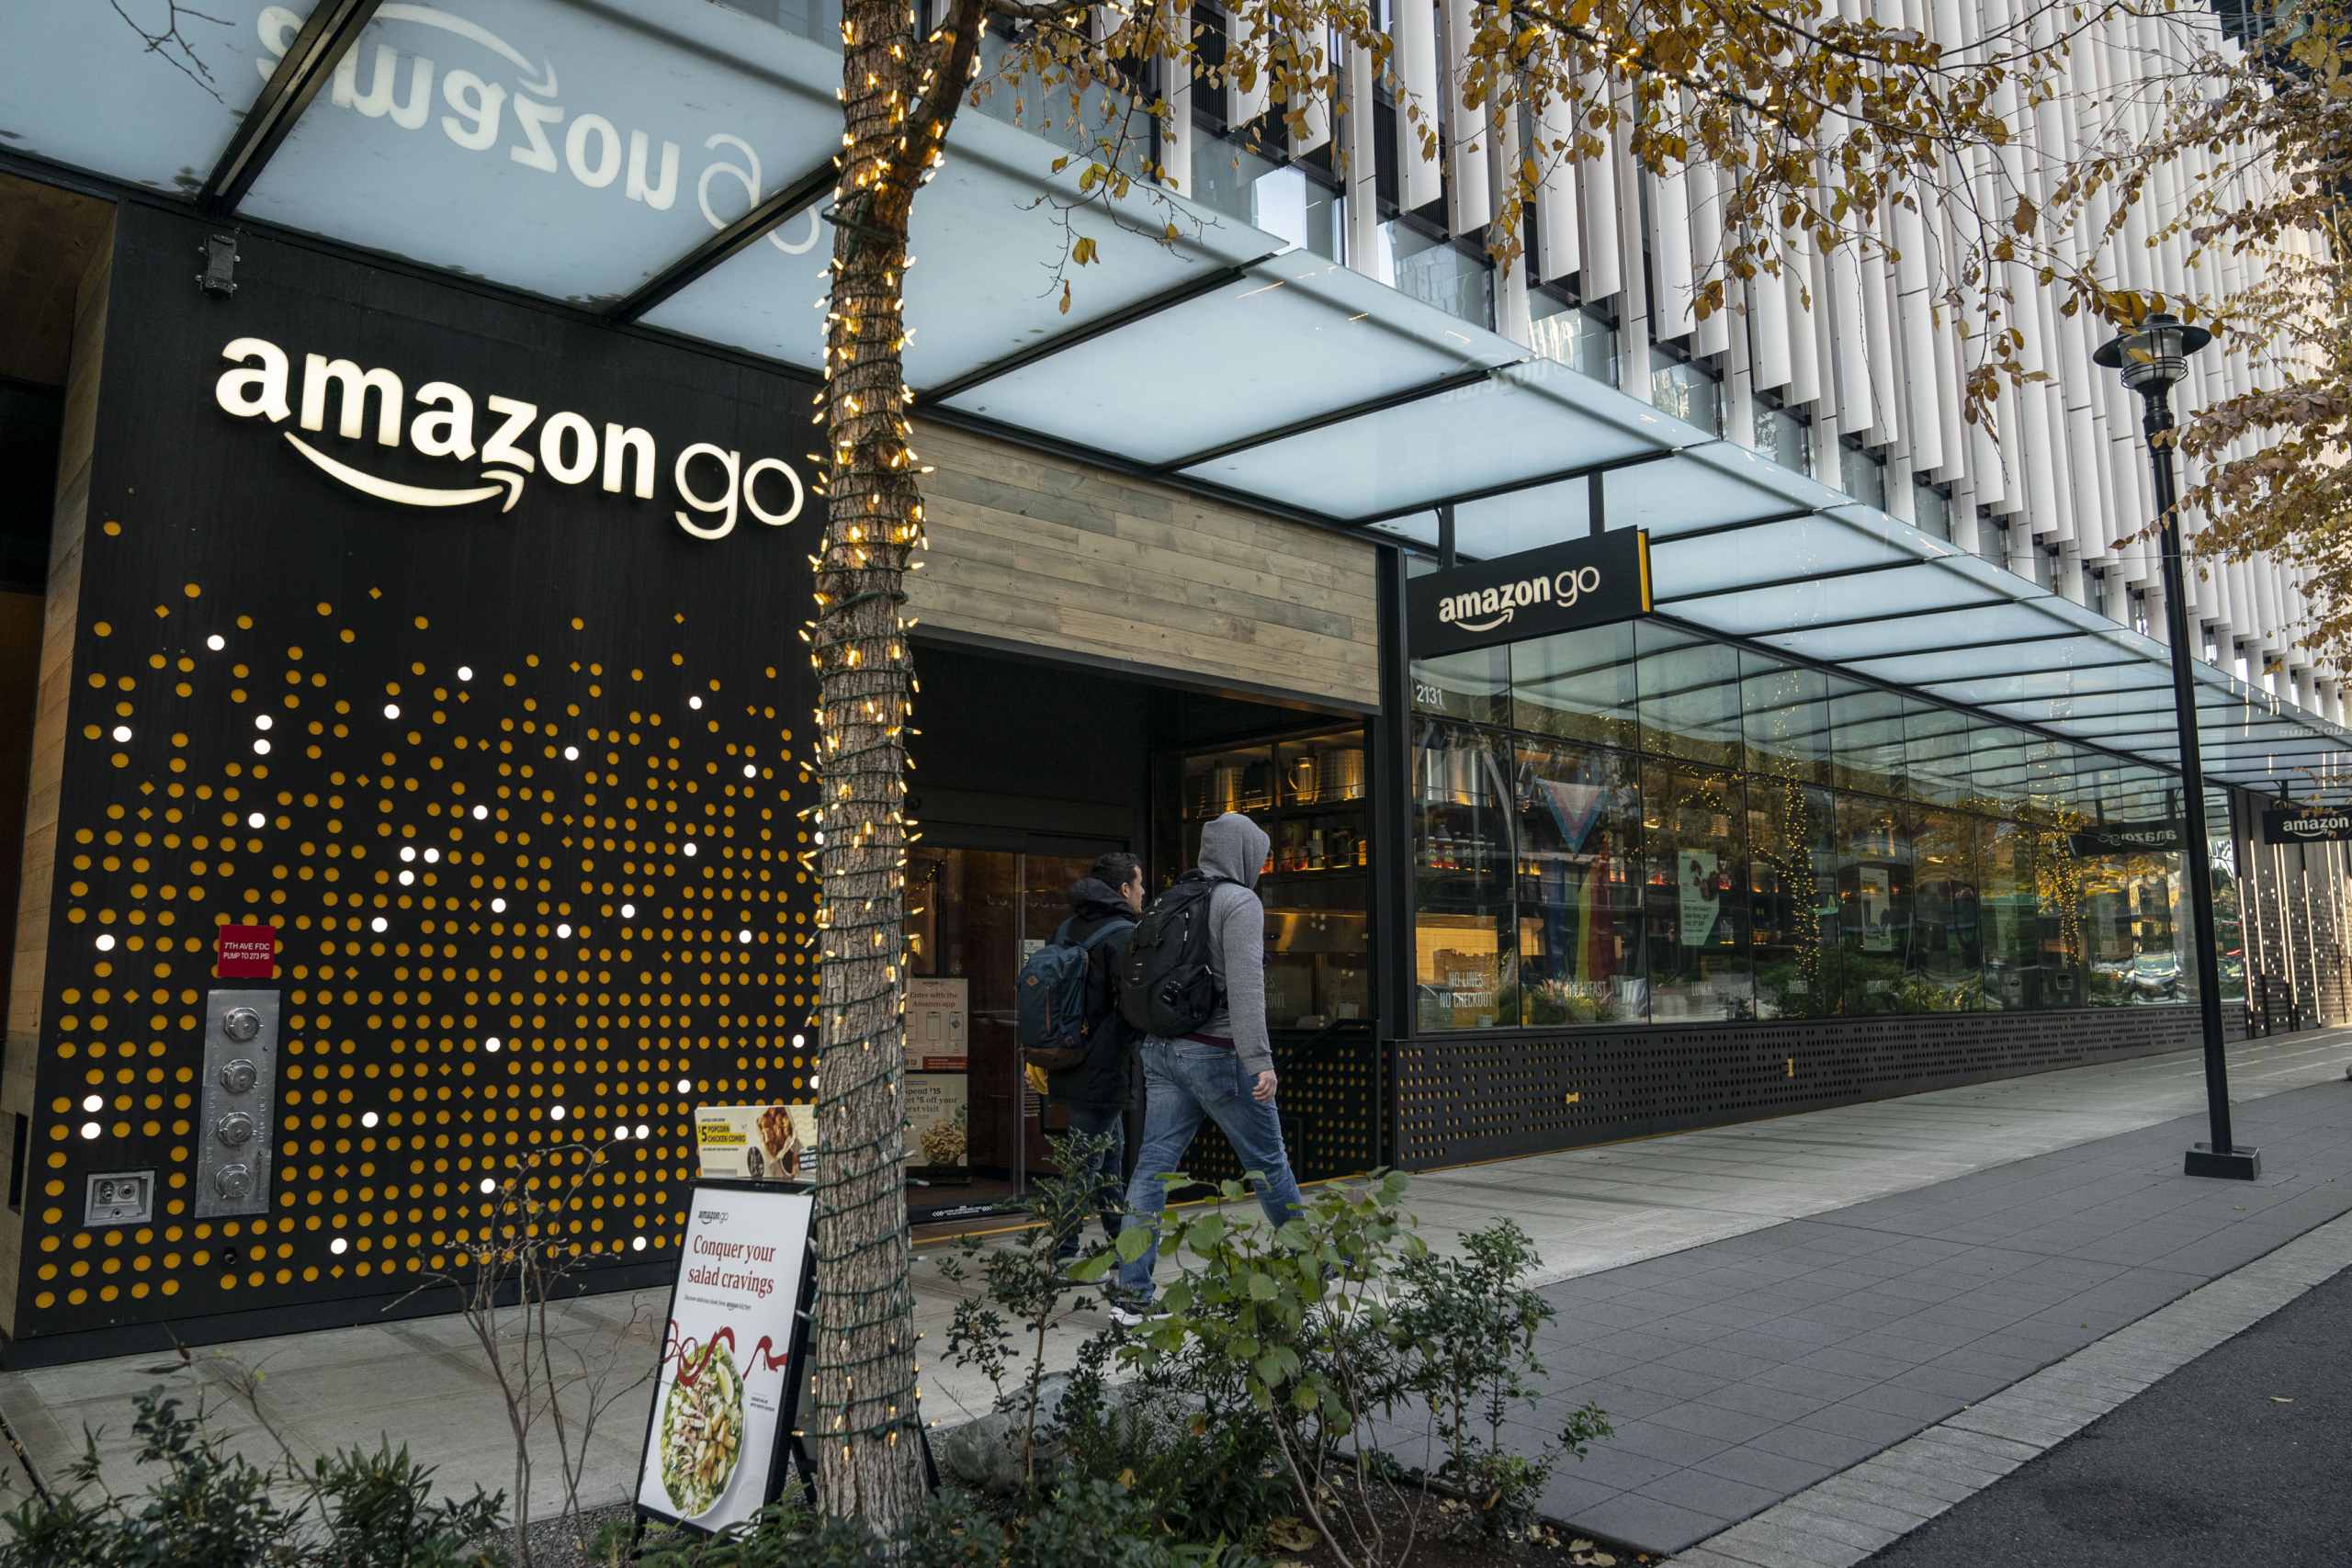 Một cửa hàng bán lẻ Amazon Go được nhìn thấy tại trụ sở của Amazon.com Inc. ở Seattle hôm 14/11/2022. (Ảnh: David Ryder/Getty Images)